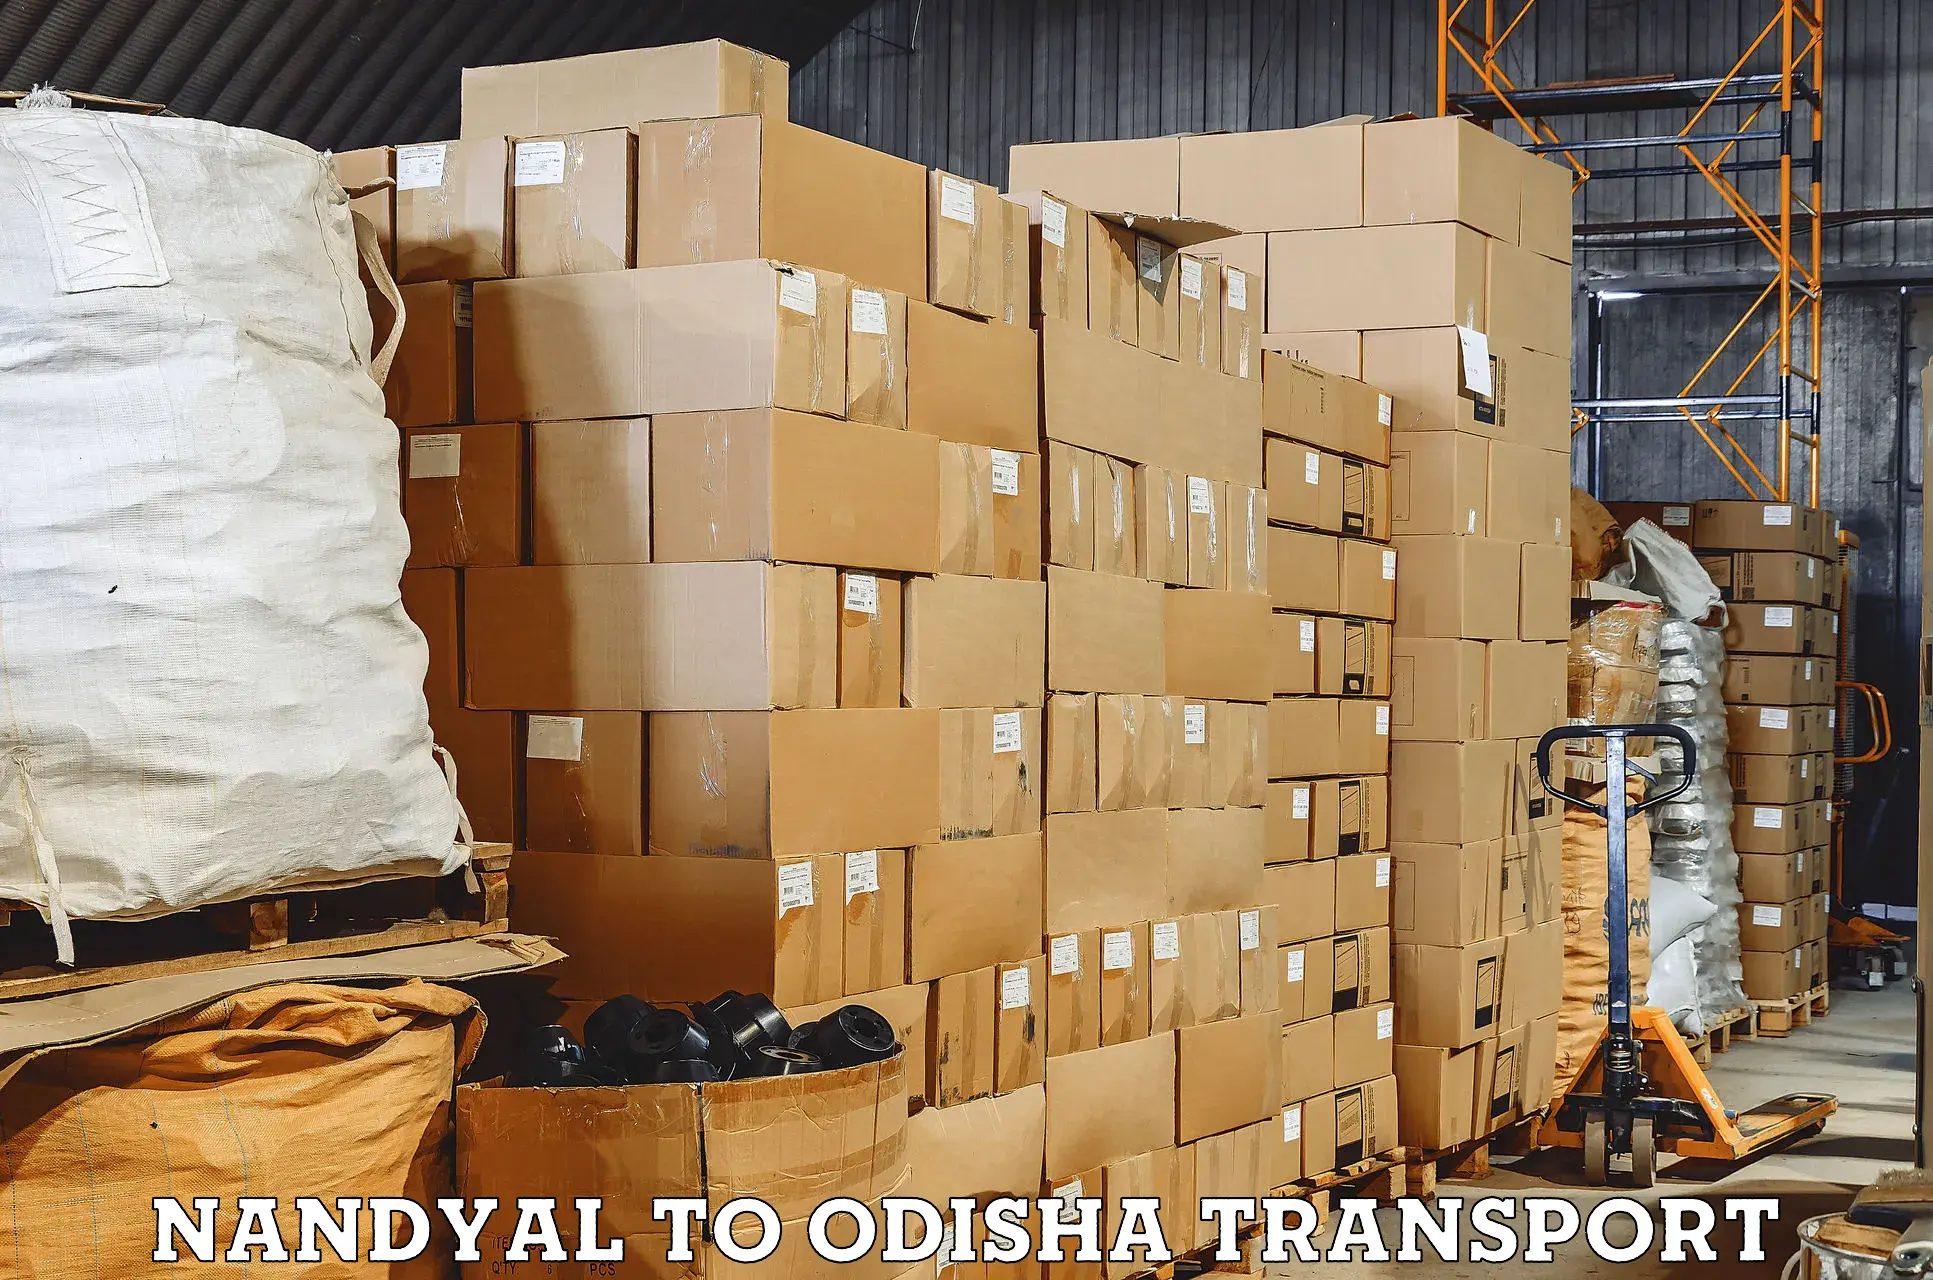 Commercial transport service Nandyal to Brajrajnagar